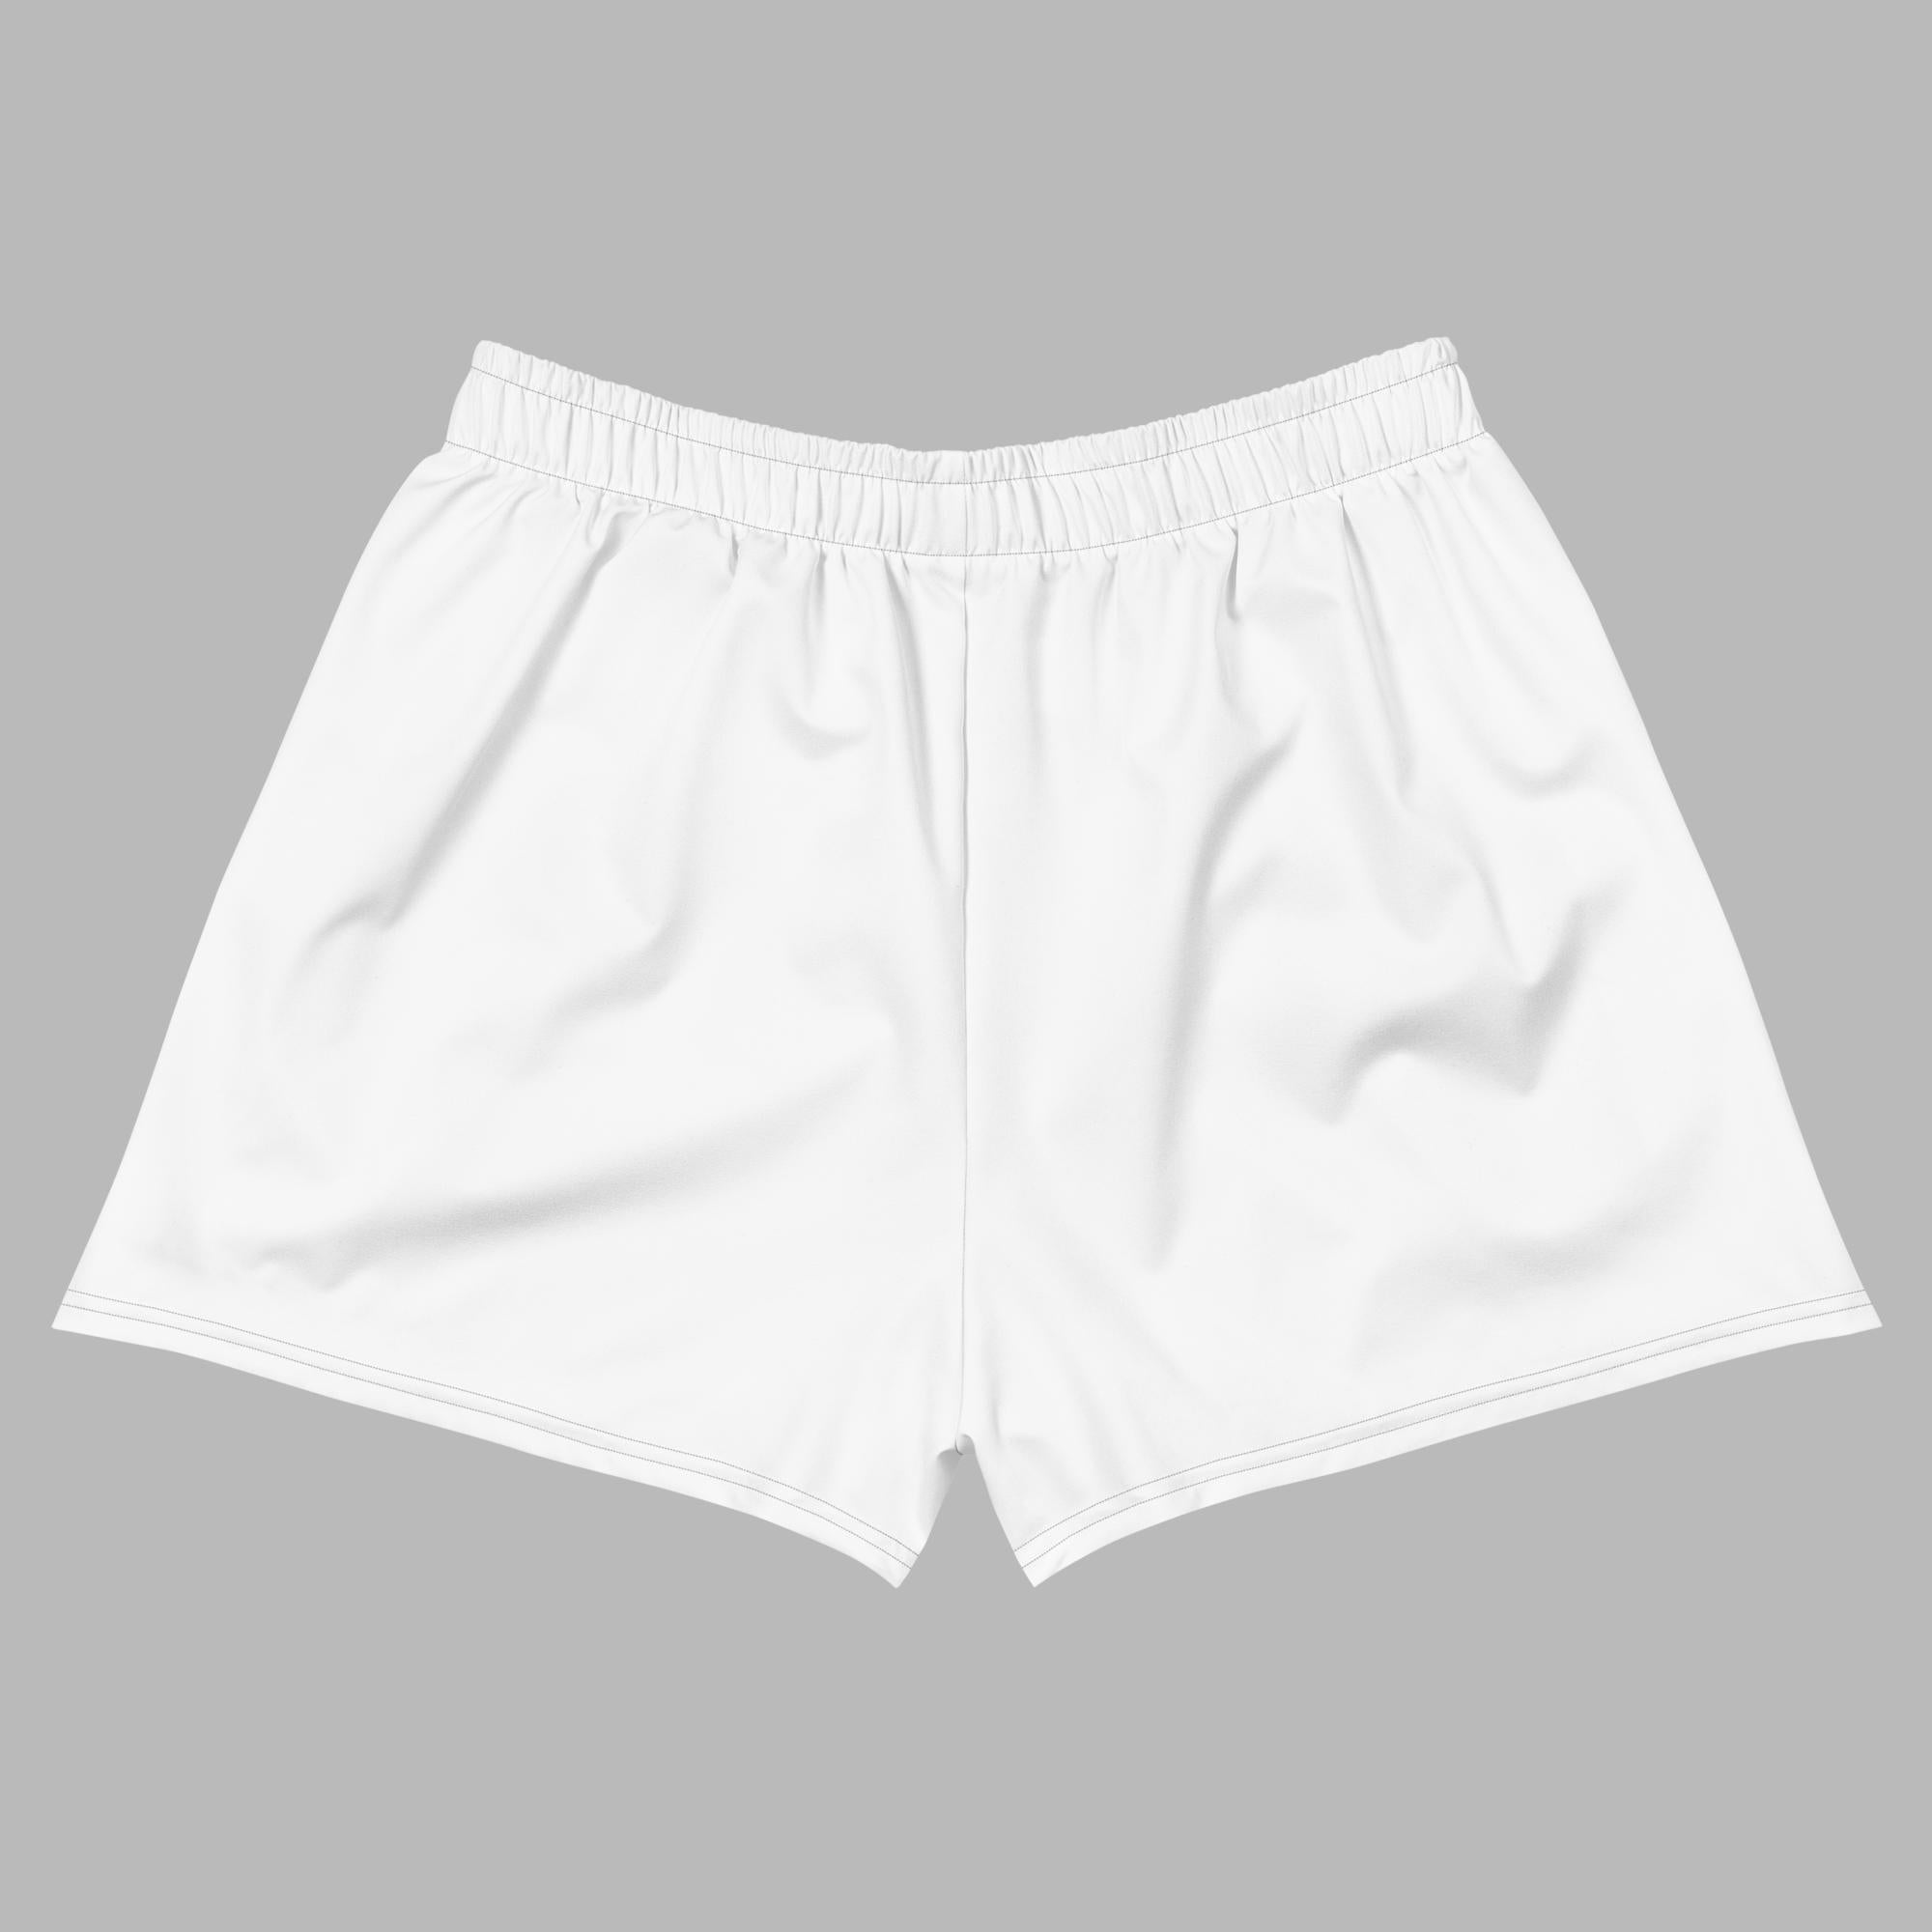 Pantalón corto deportivo para mujer - Blanco